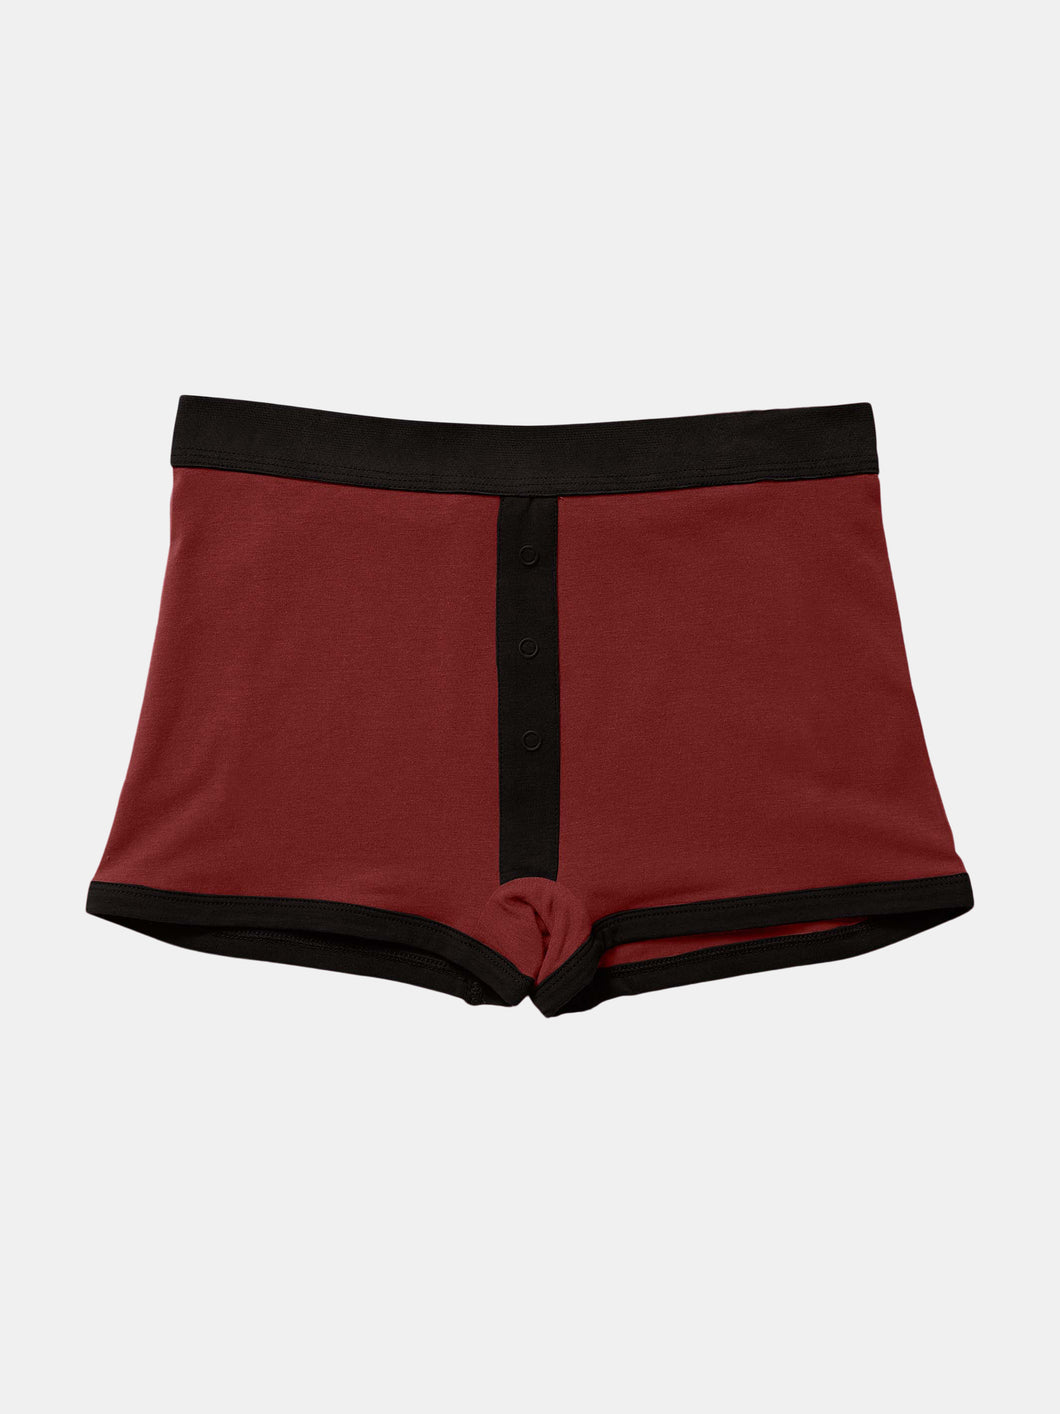 Women's Cotton Modal Boxer Brief - Black/Red Mahogany